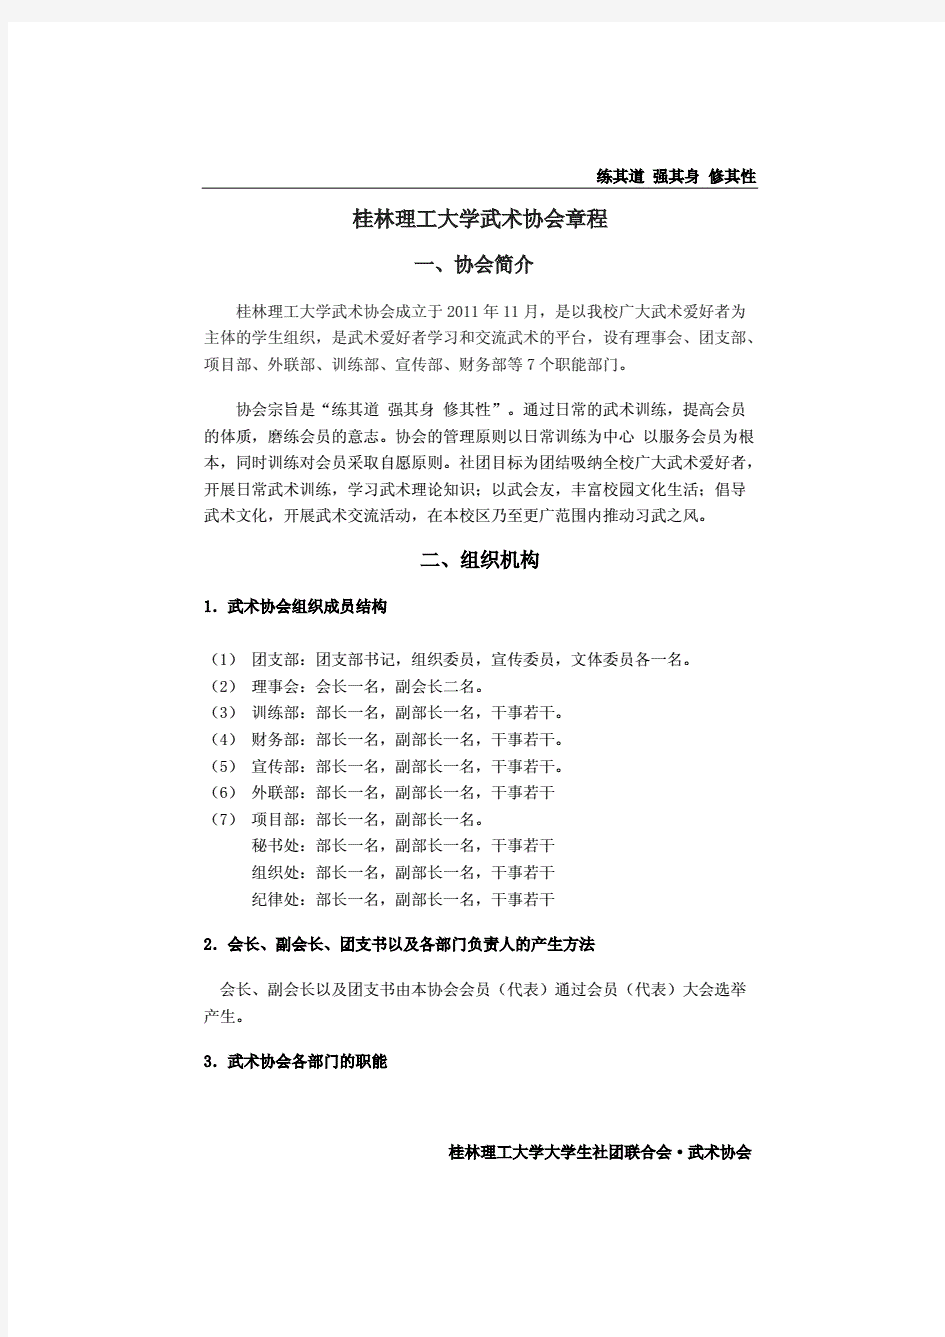 桂林理工大学武术协会章程